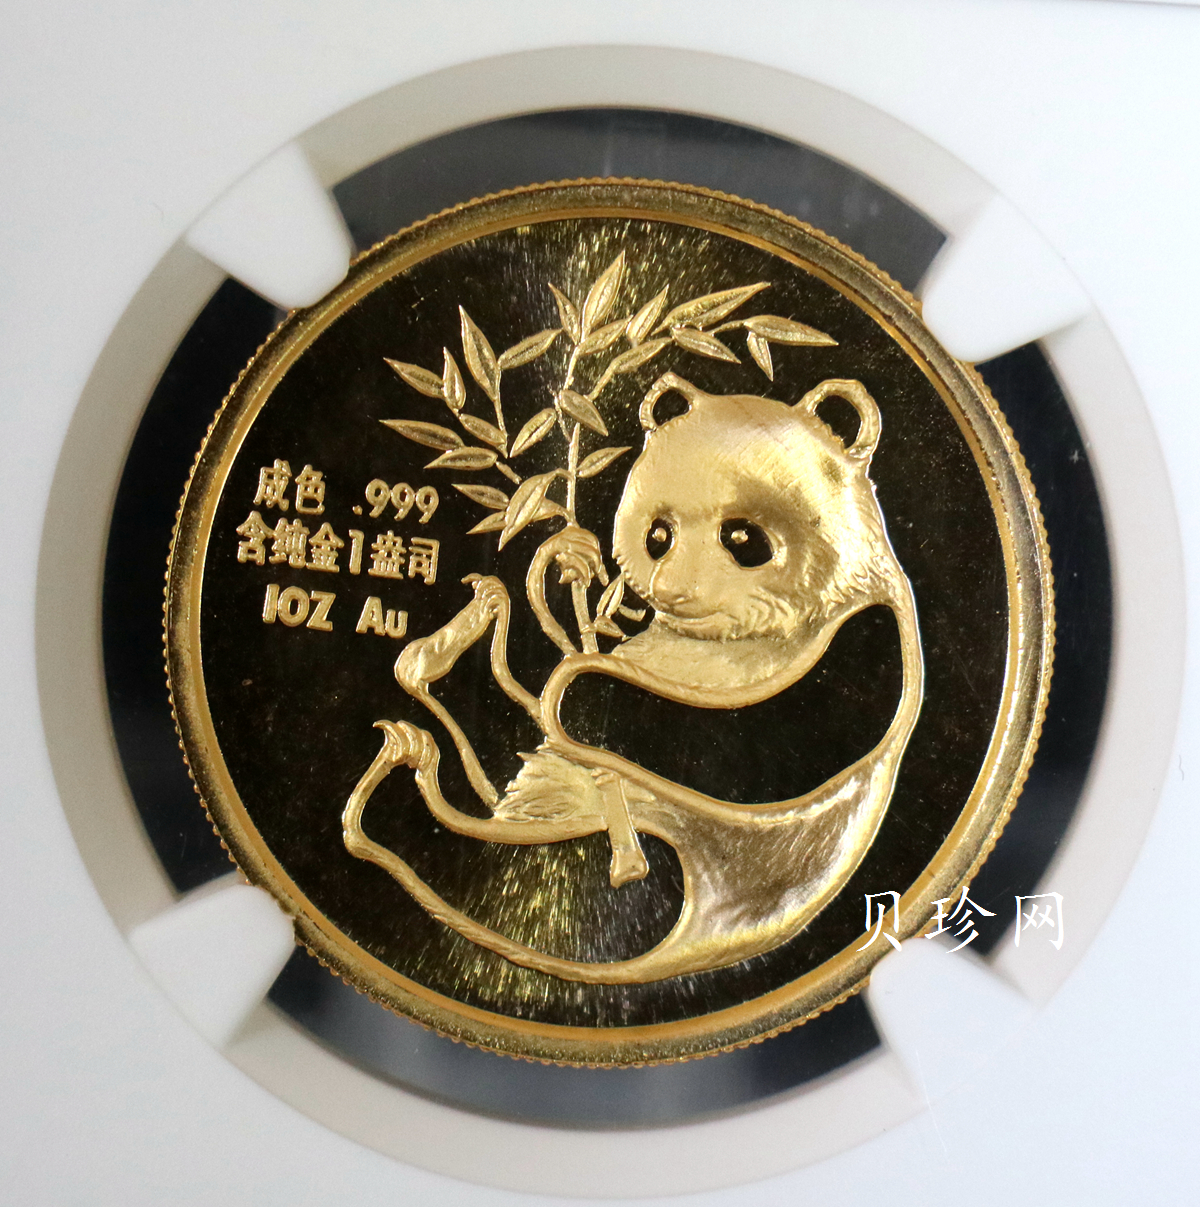 【879160】1987年美国旧金山国际硬币展-大熊猫1盎司金章